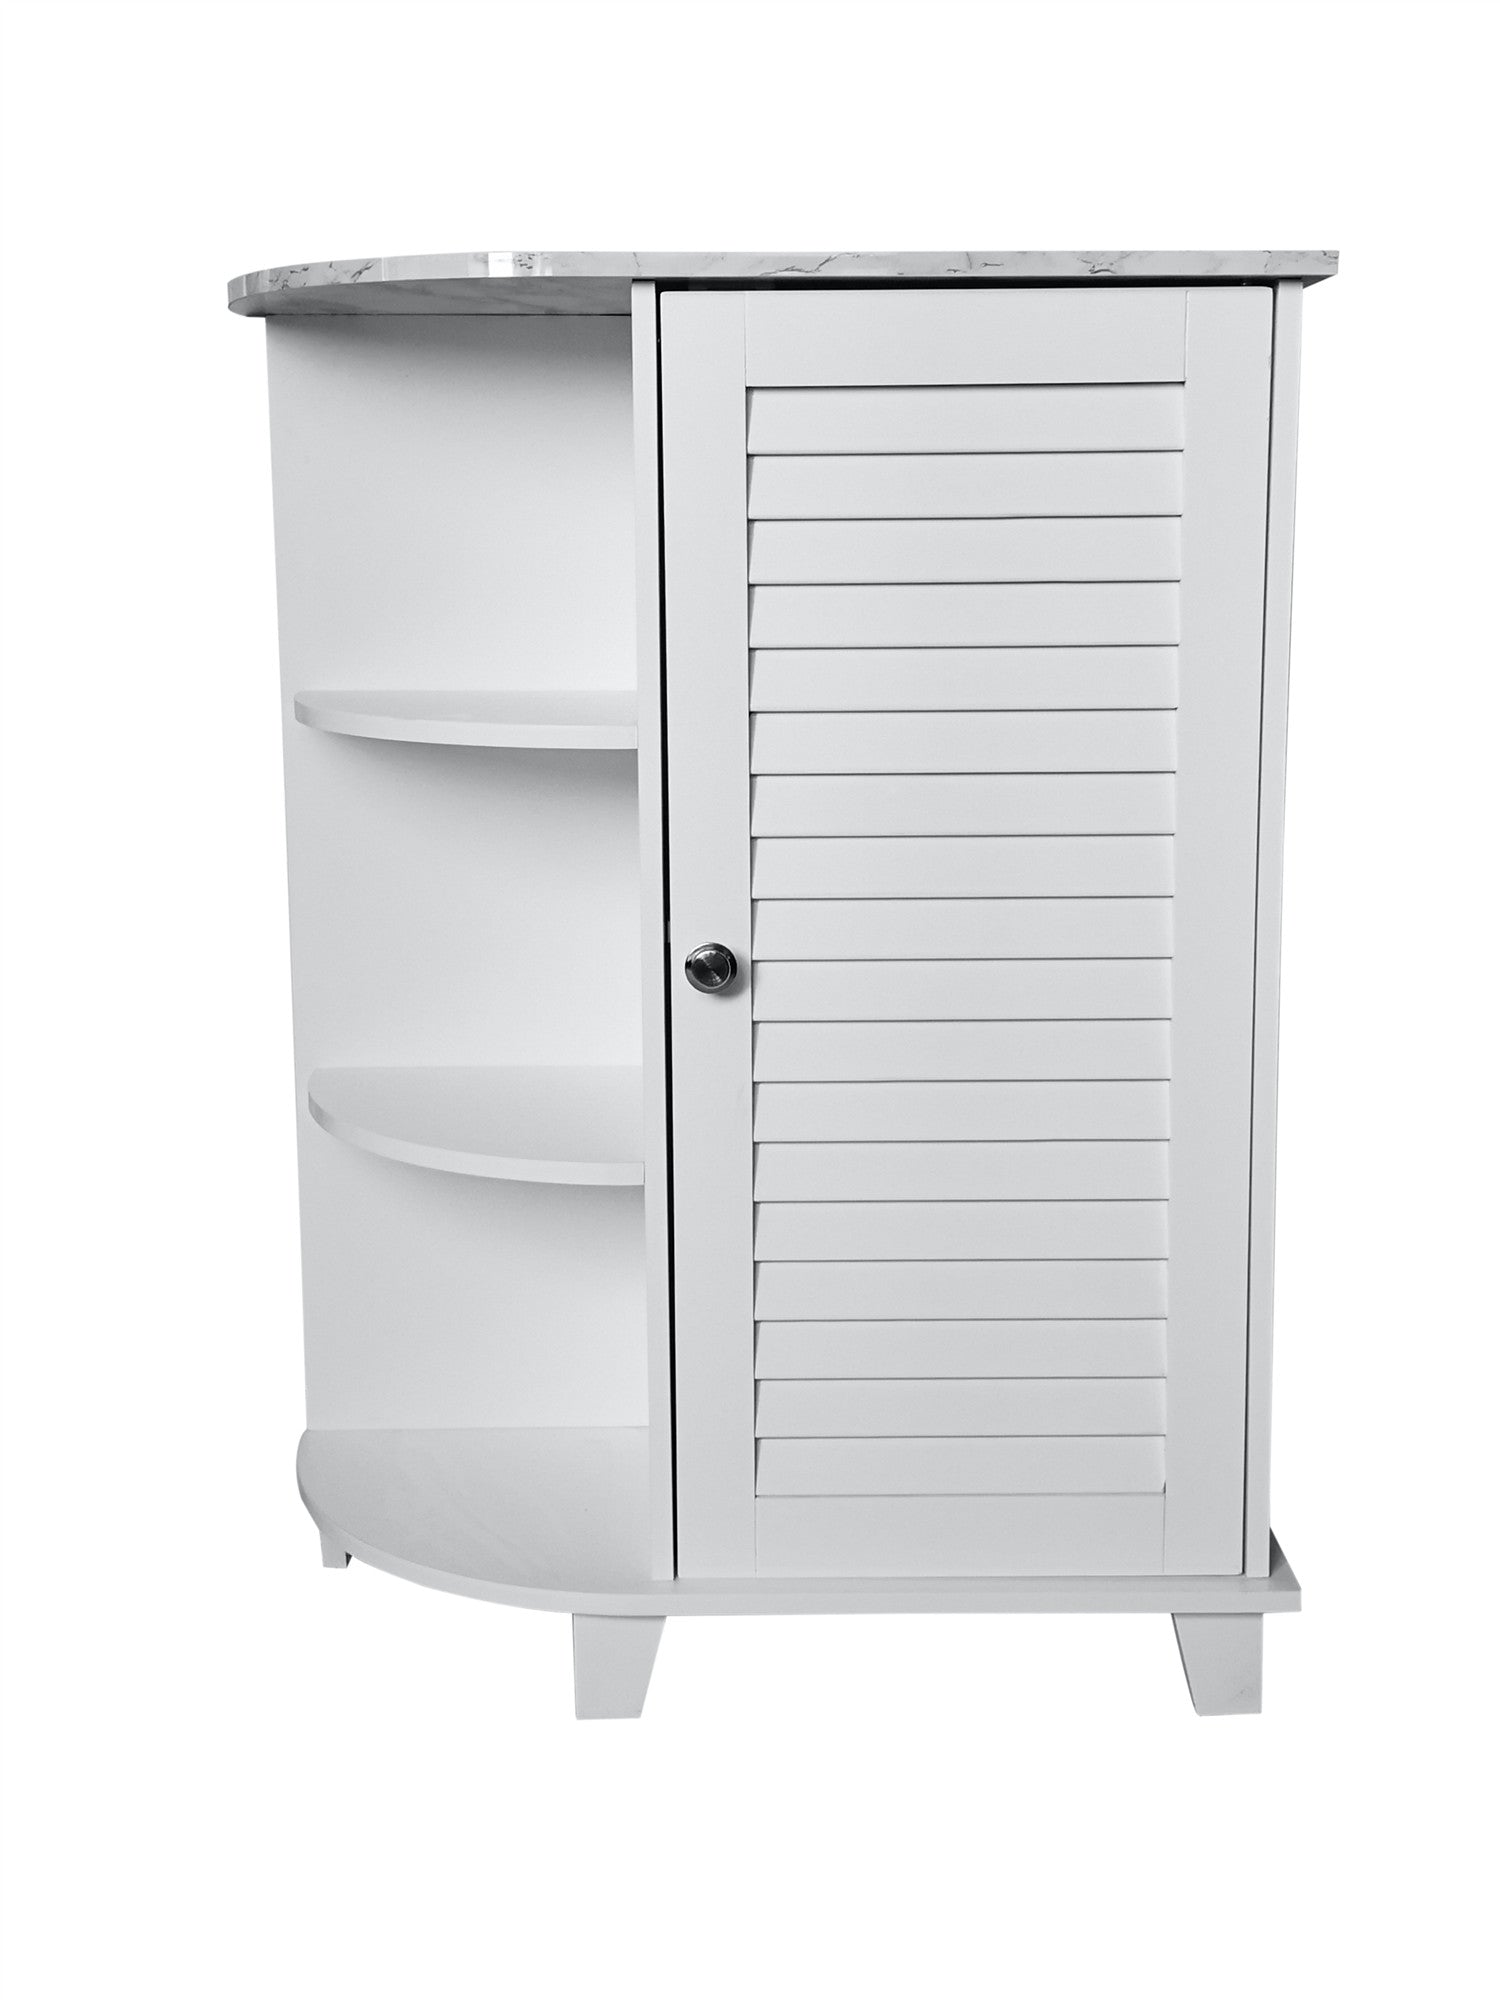 Pilaster Designs Helsinki Wood Bathroom Storage Tower Organizer in White